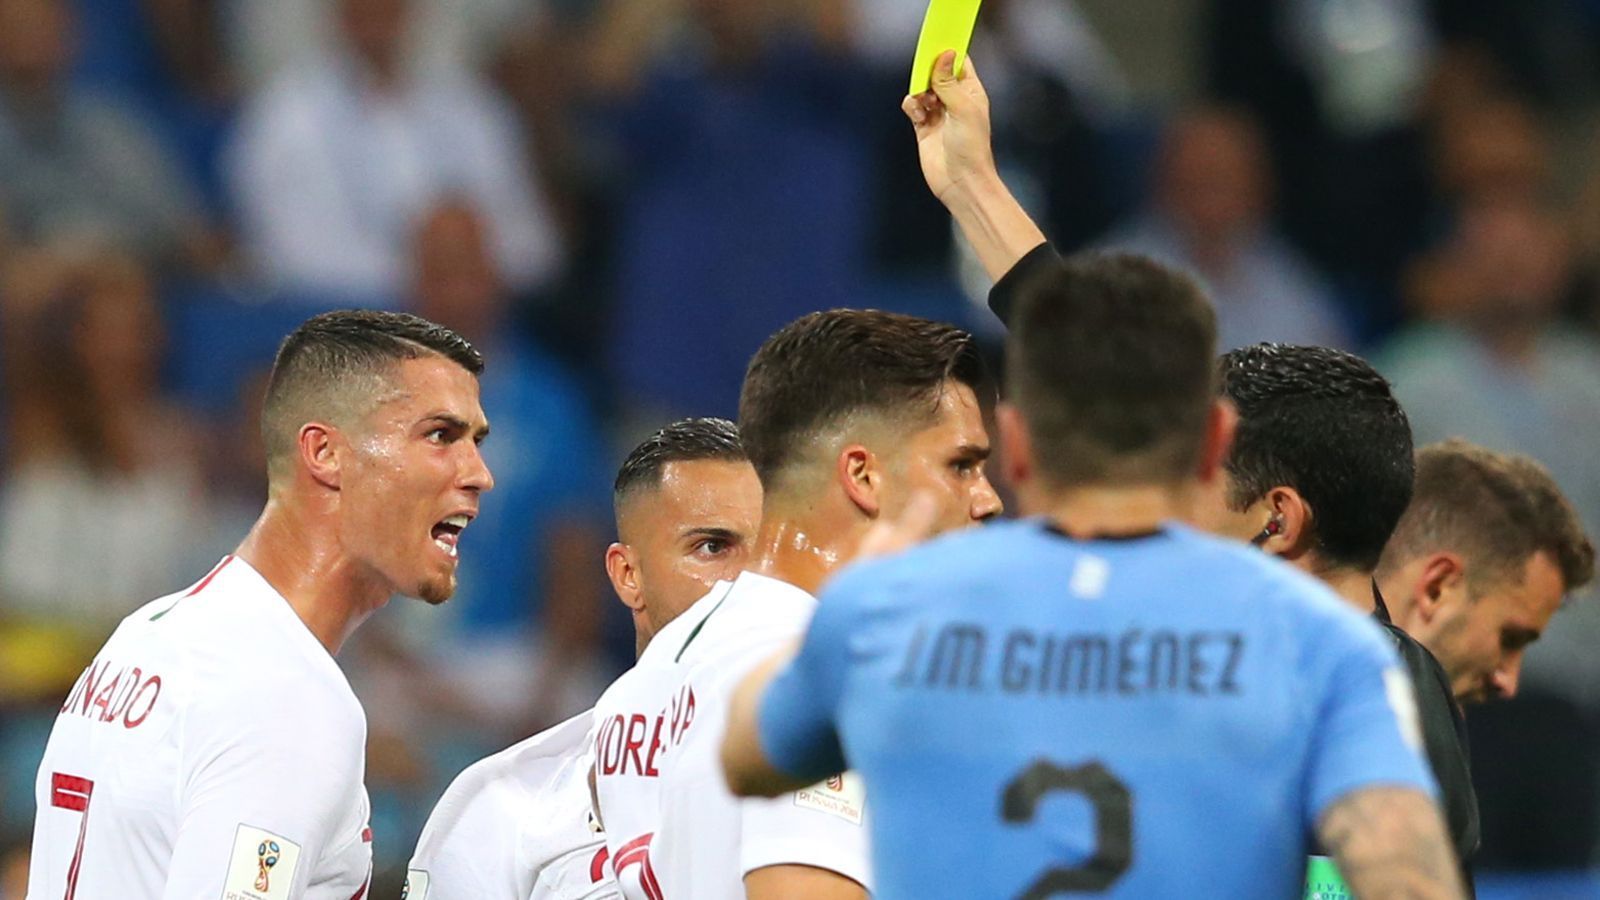 
                <strong>Angriff: Cristiano Ronaldo (Portugal)</strong><br>
                In der Gruppenphase hochgejubelt und gefeiert, im Achtelfinale geht Cristiano Ronaldo unter. Der 33-Jährige kann seiner Mannschaft nicht helfen. Torchancen sind absolute Mangelware und schließlich sieht der Stürmer auch noch die Gelbe Karte wegen Meckerns. Damit wäre er im Viertelfinale ohnehin gesperrt. Dieses Szenario erledigt sich allerdings: Portugal unterliegt Uruguay und scheidet im Achtelfinale aus.
              